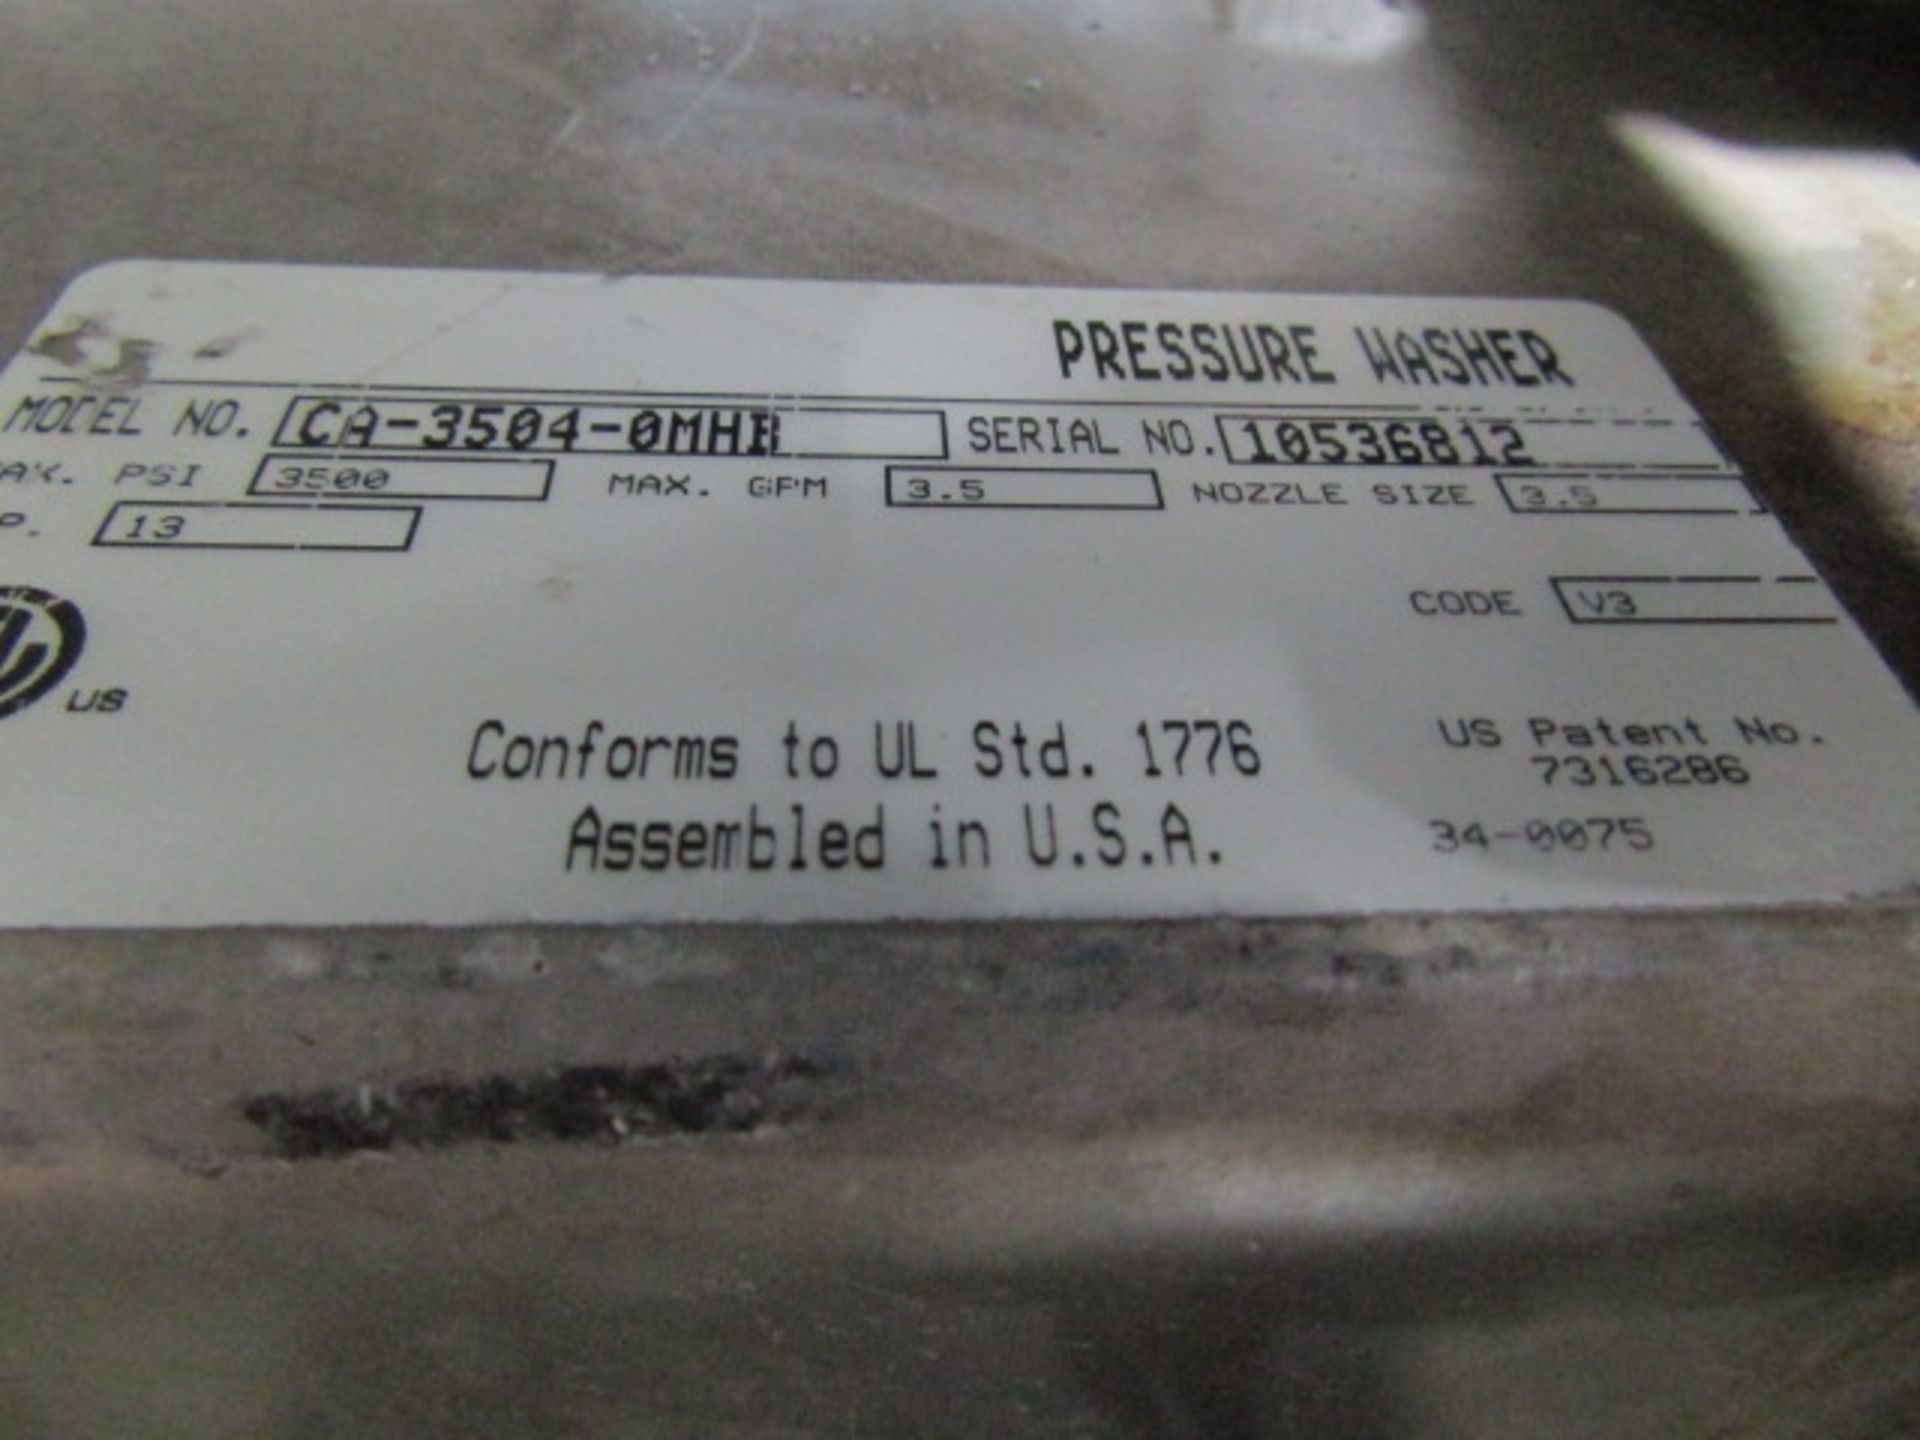 MTM CA-3504-0M4B Pressure Washer, Honda GX390, 3500 PSI, Serial #10536812 - Image 7 of 7